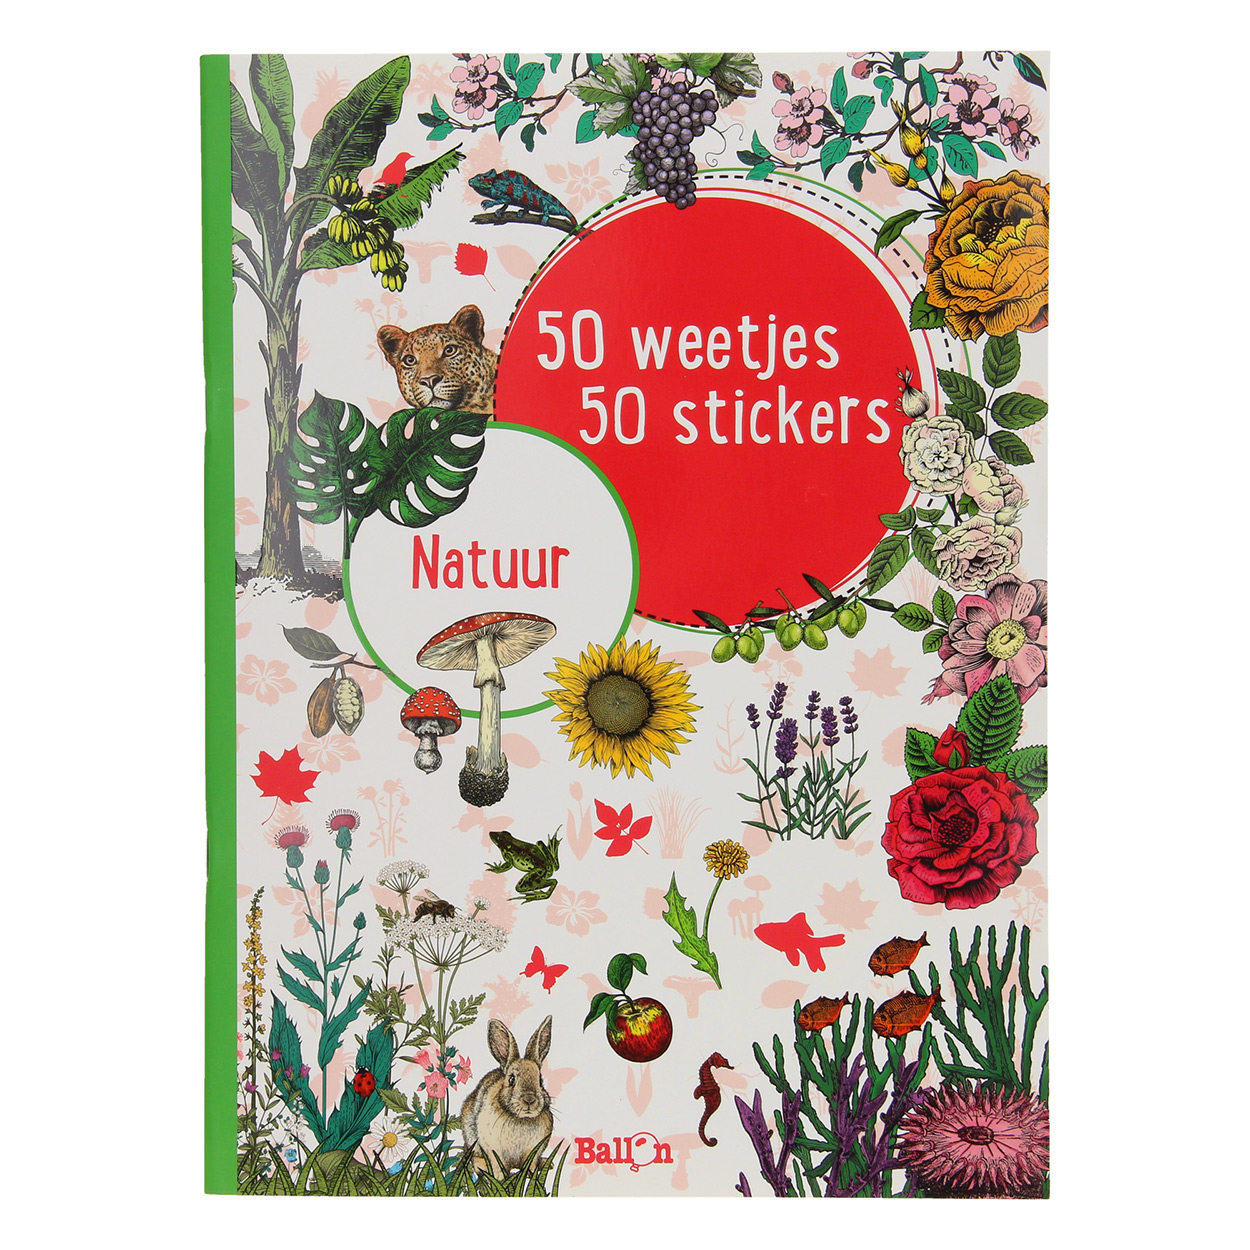 50 Weetjes 50 Stickers - Natuur